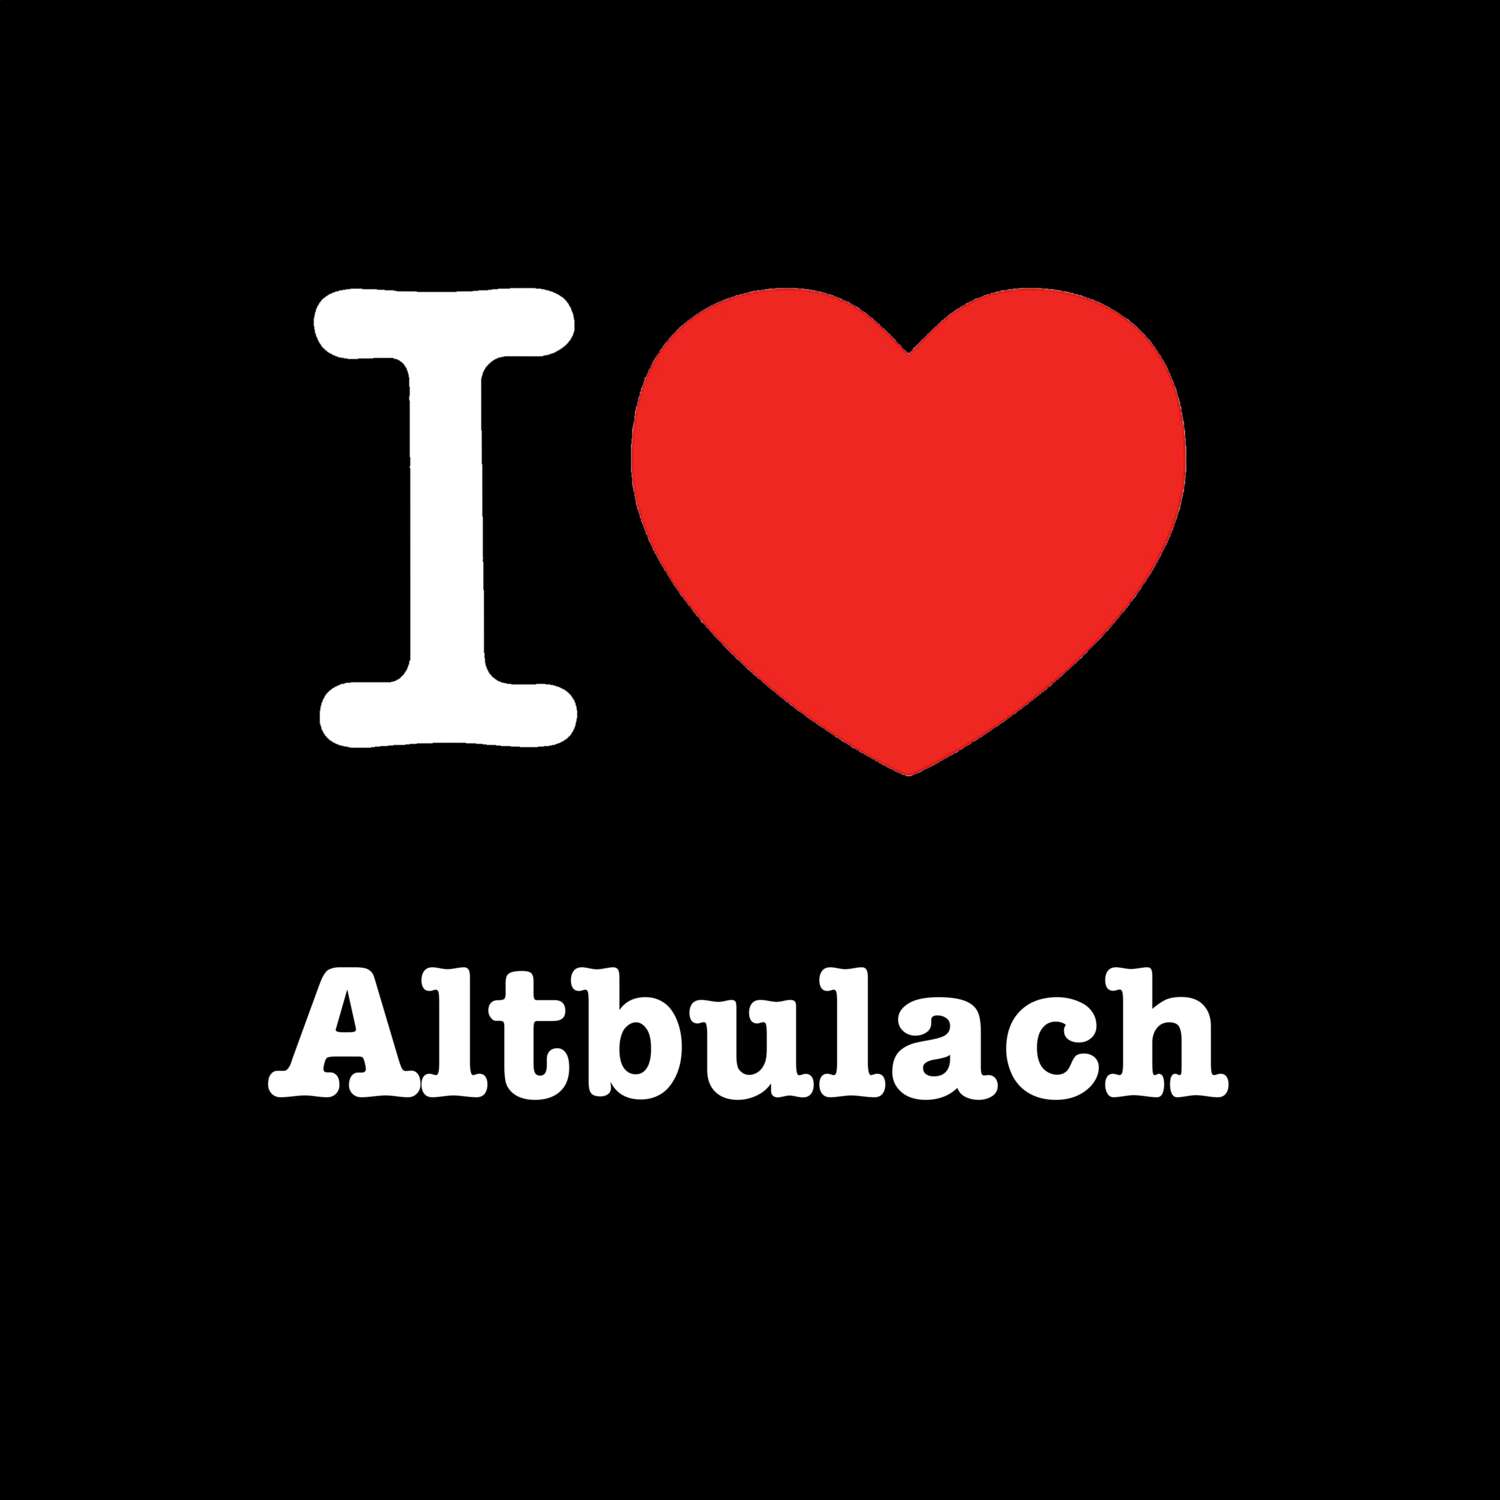 Altbulach T-Shirt »I love«